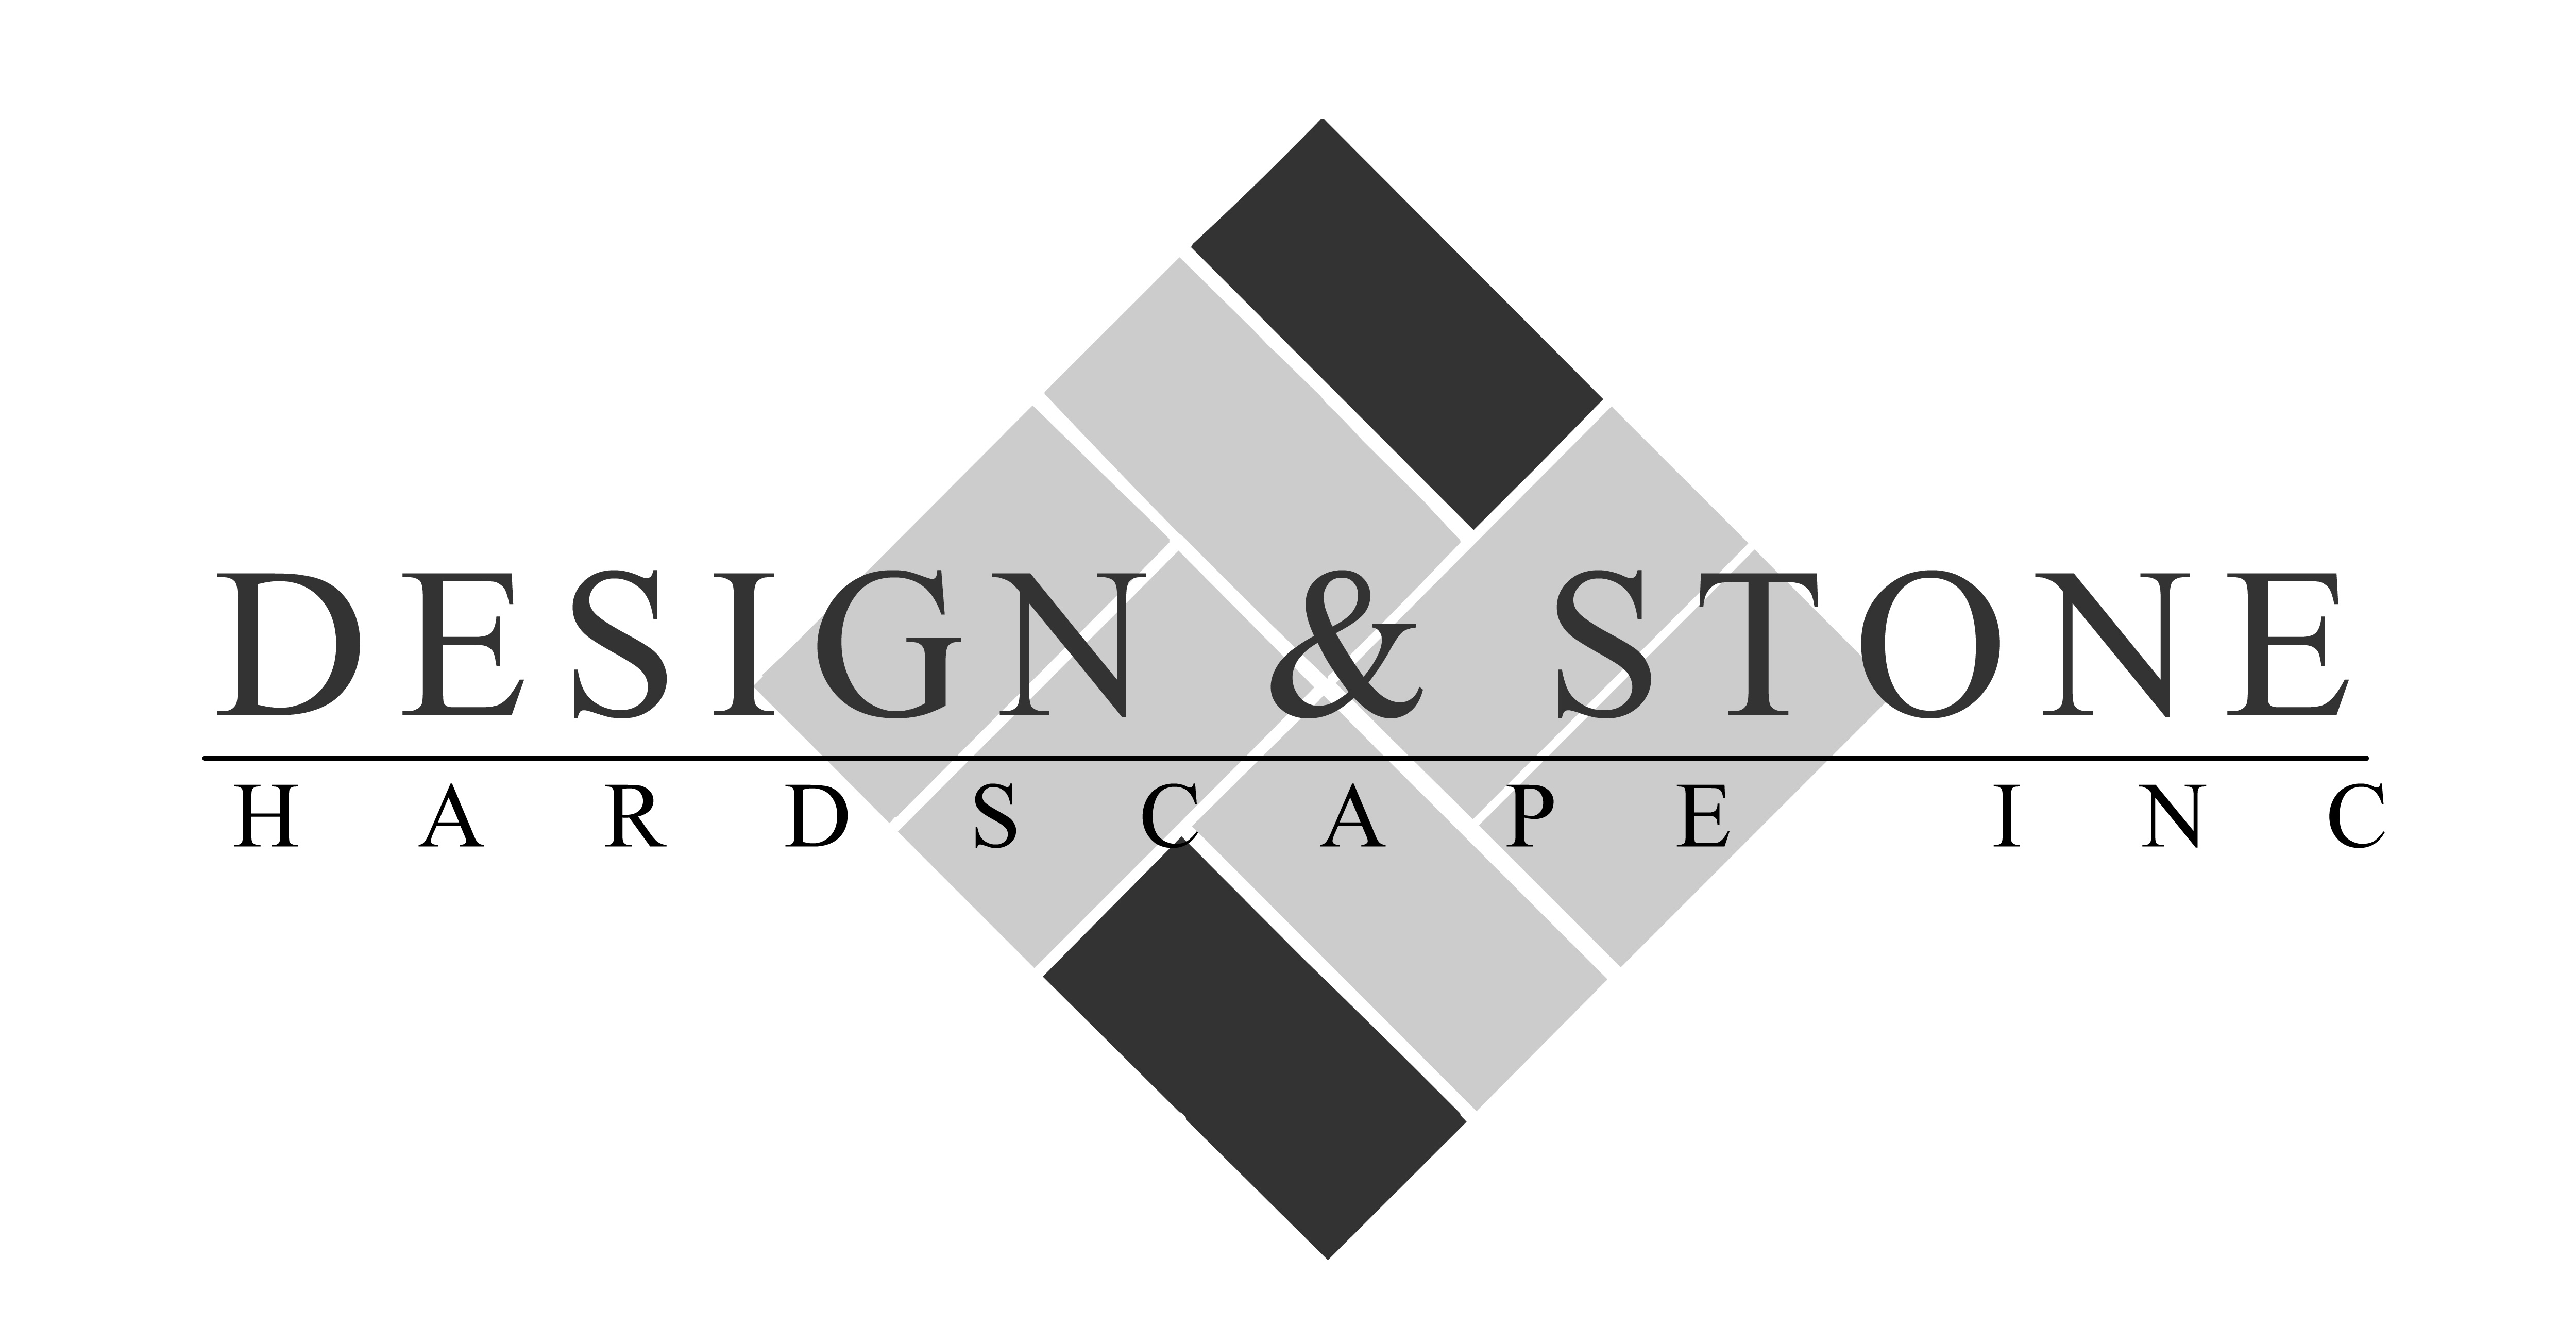 Design & Stone Hardscape Inc's logo